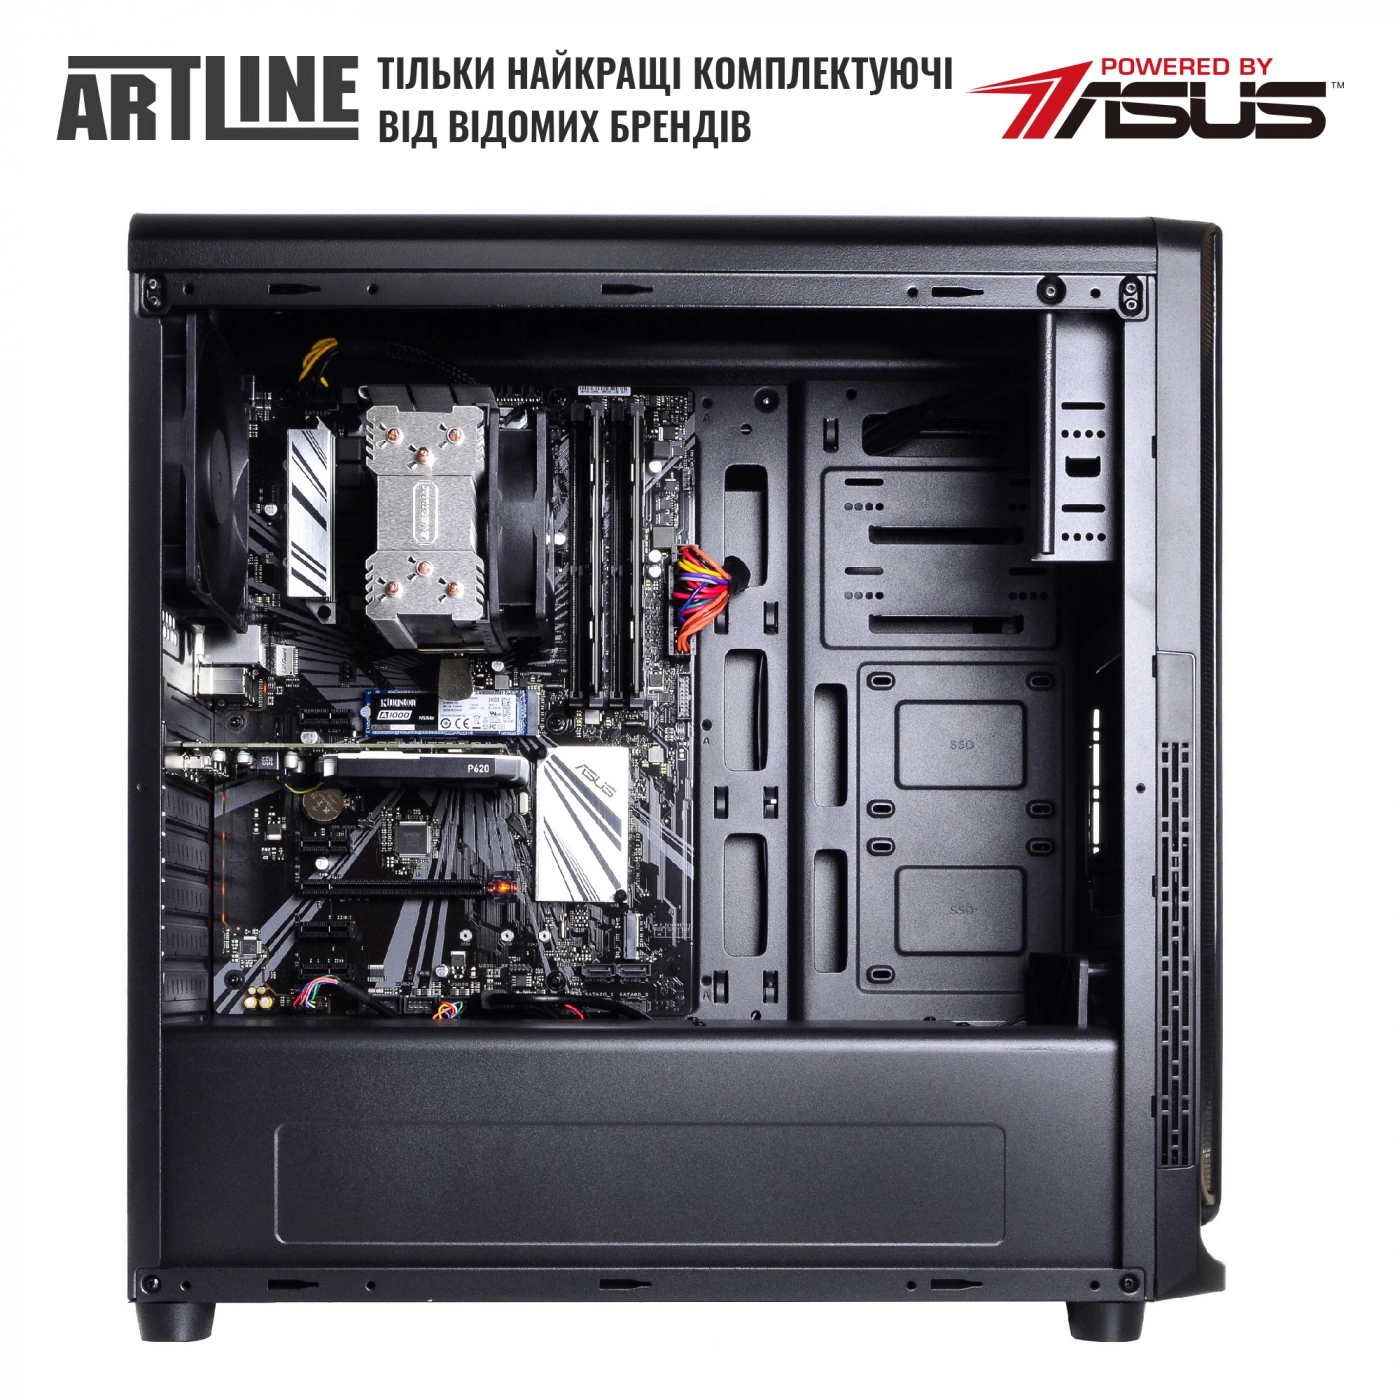 Купить Сервер ARTLINE Business T65v08 - фото 5